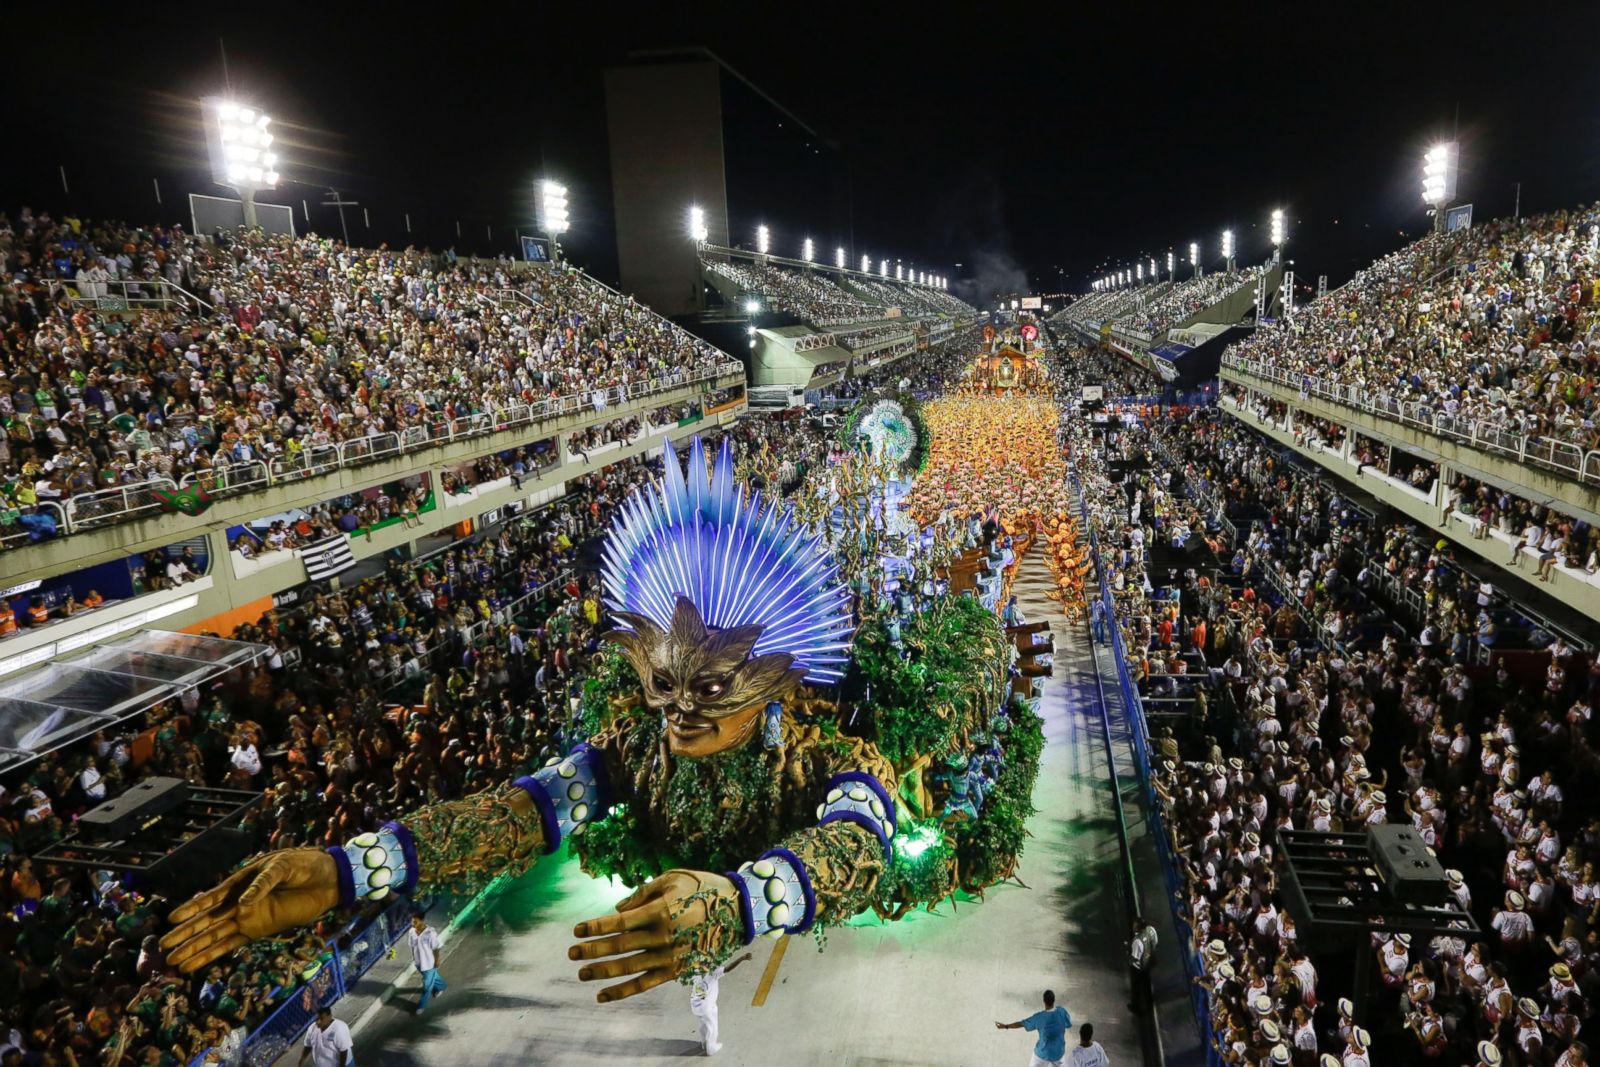 https://s.abcnews.com/images/International/AP_brazil_carnival_2_jtm_150216_3x2_1600.jpg?w=1600